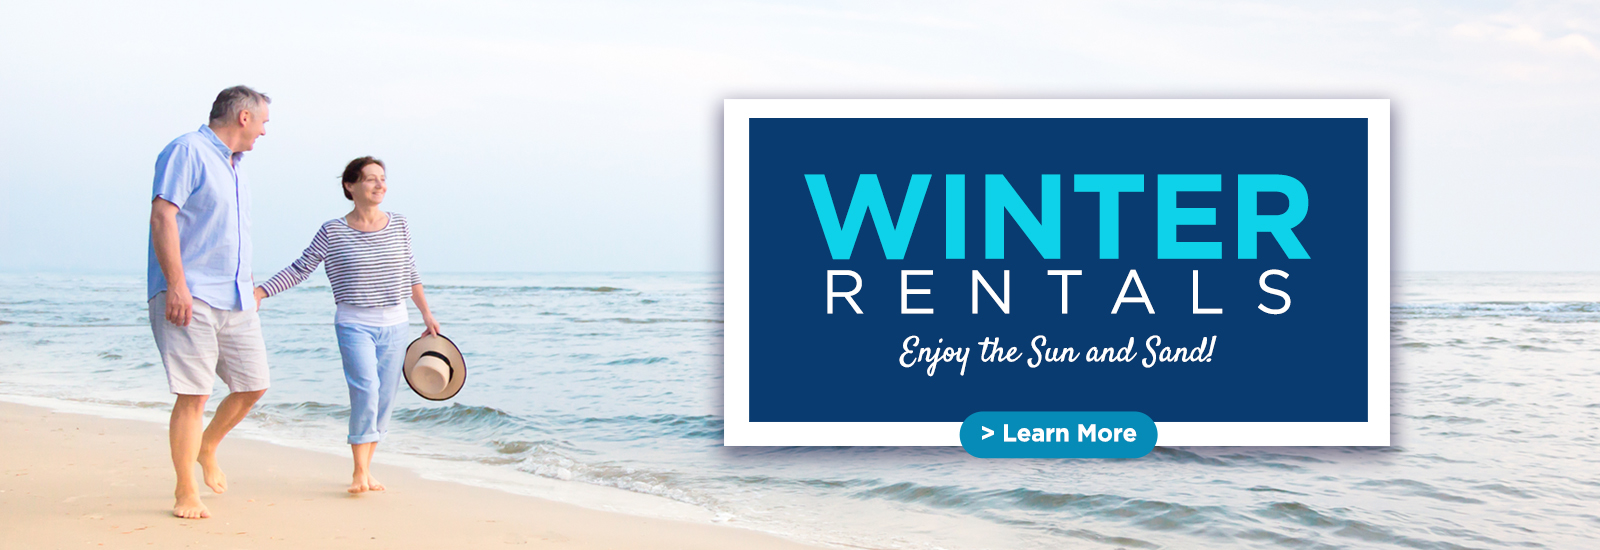 Winter Rentals at Bay View Resort